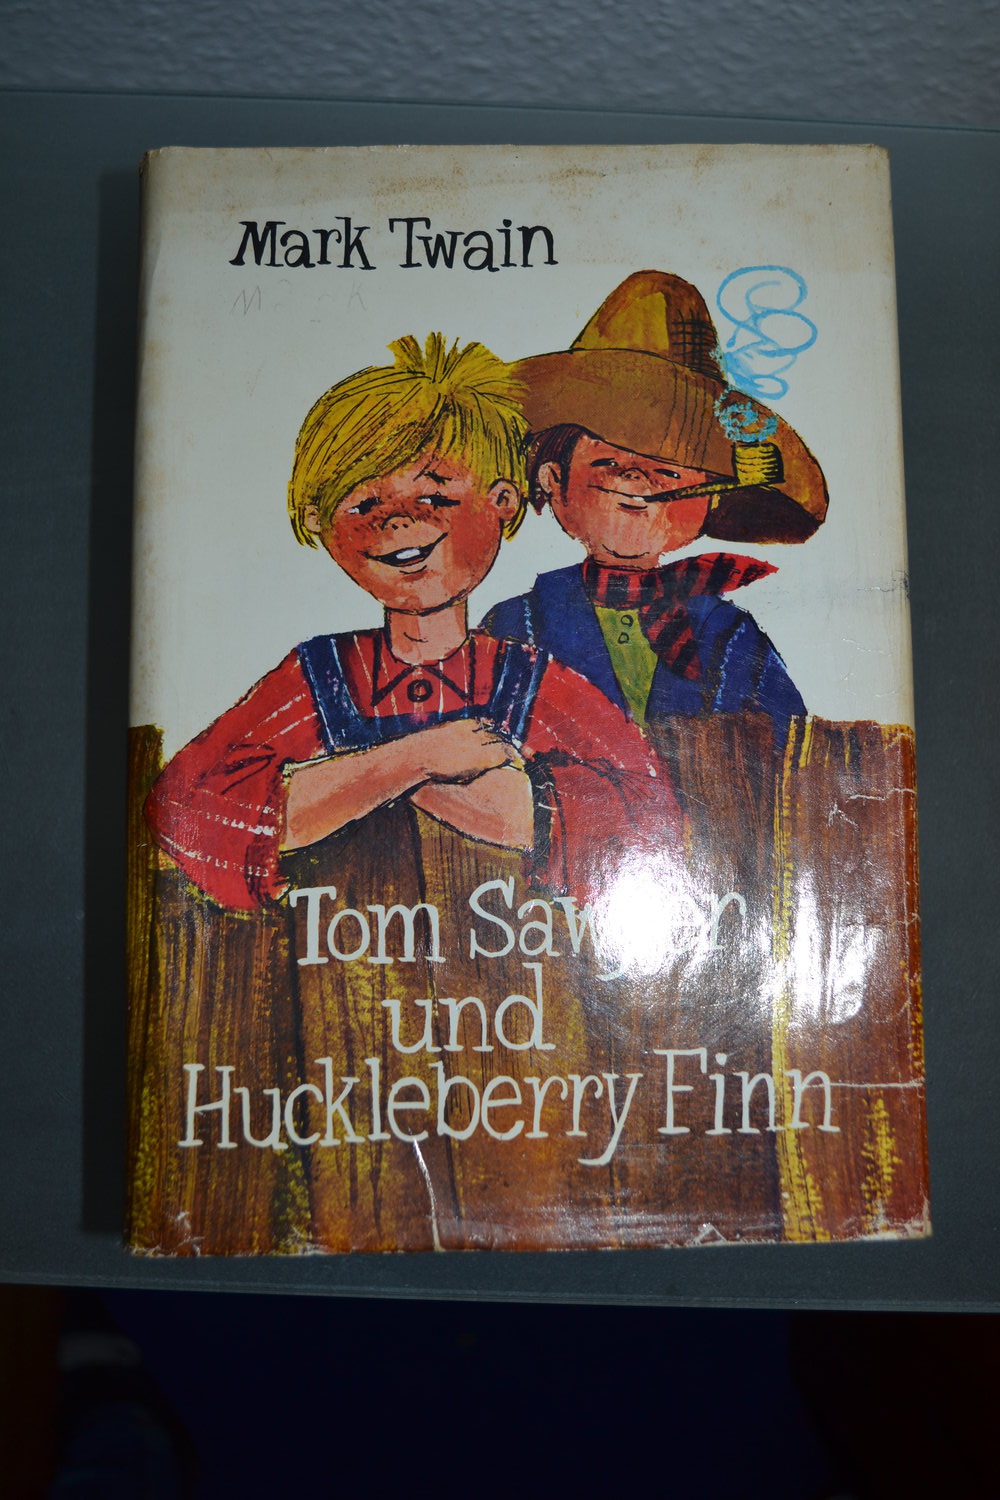 Tom Sawyer und Huckleberry Finn, Jungenbuch, Jugendbuch, Literatur, Jugendliteratur